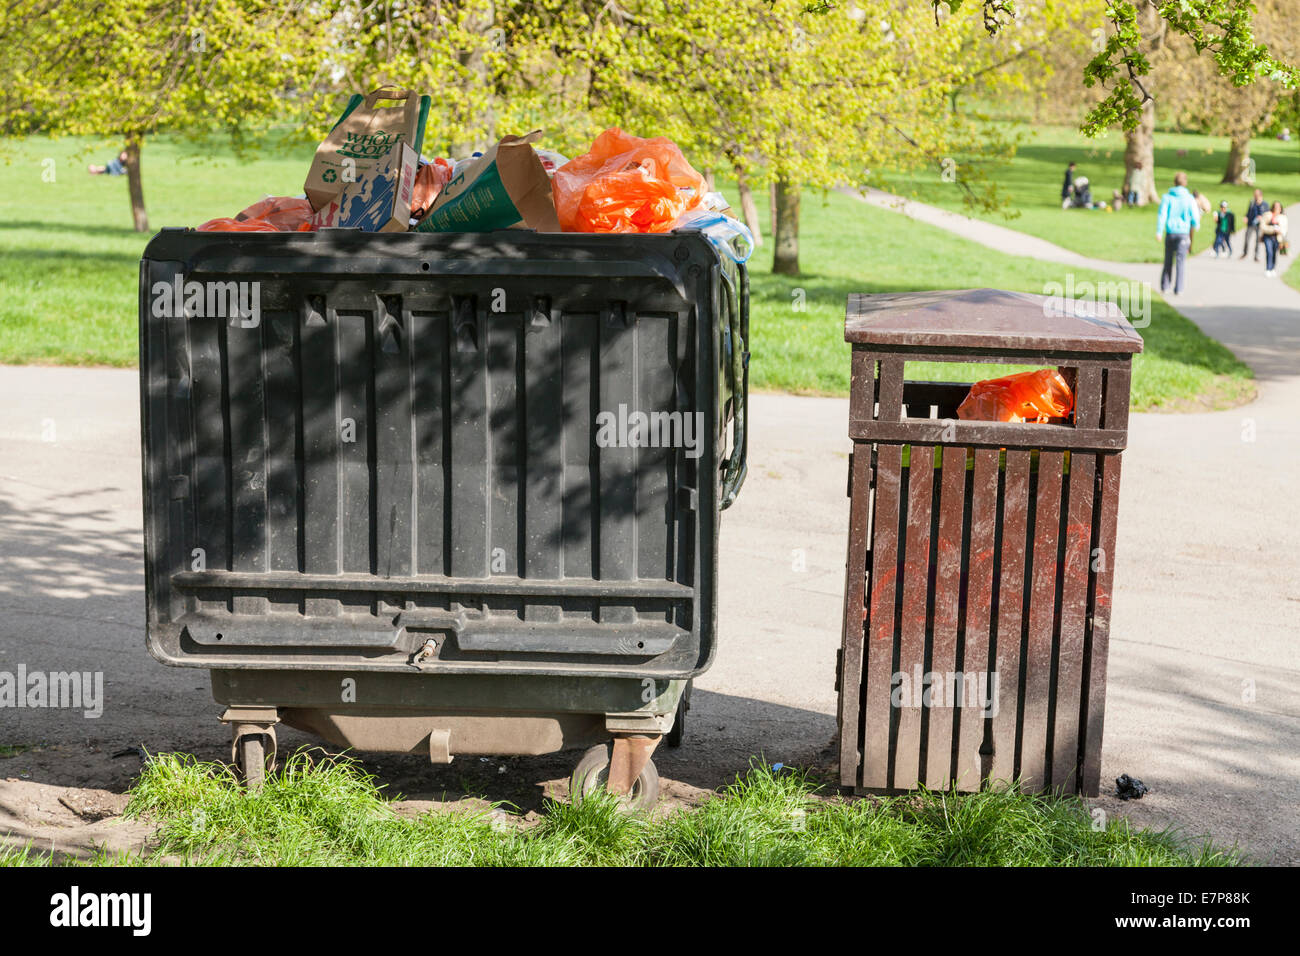 Grandes roulettes barrée à côté d'un bac de litière, les deux bacs pleins d'ordures dans un parc à Londres, Angleterre, RU Banque D'Images